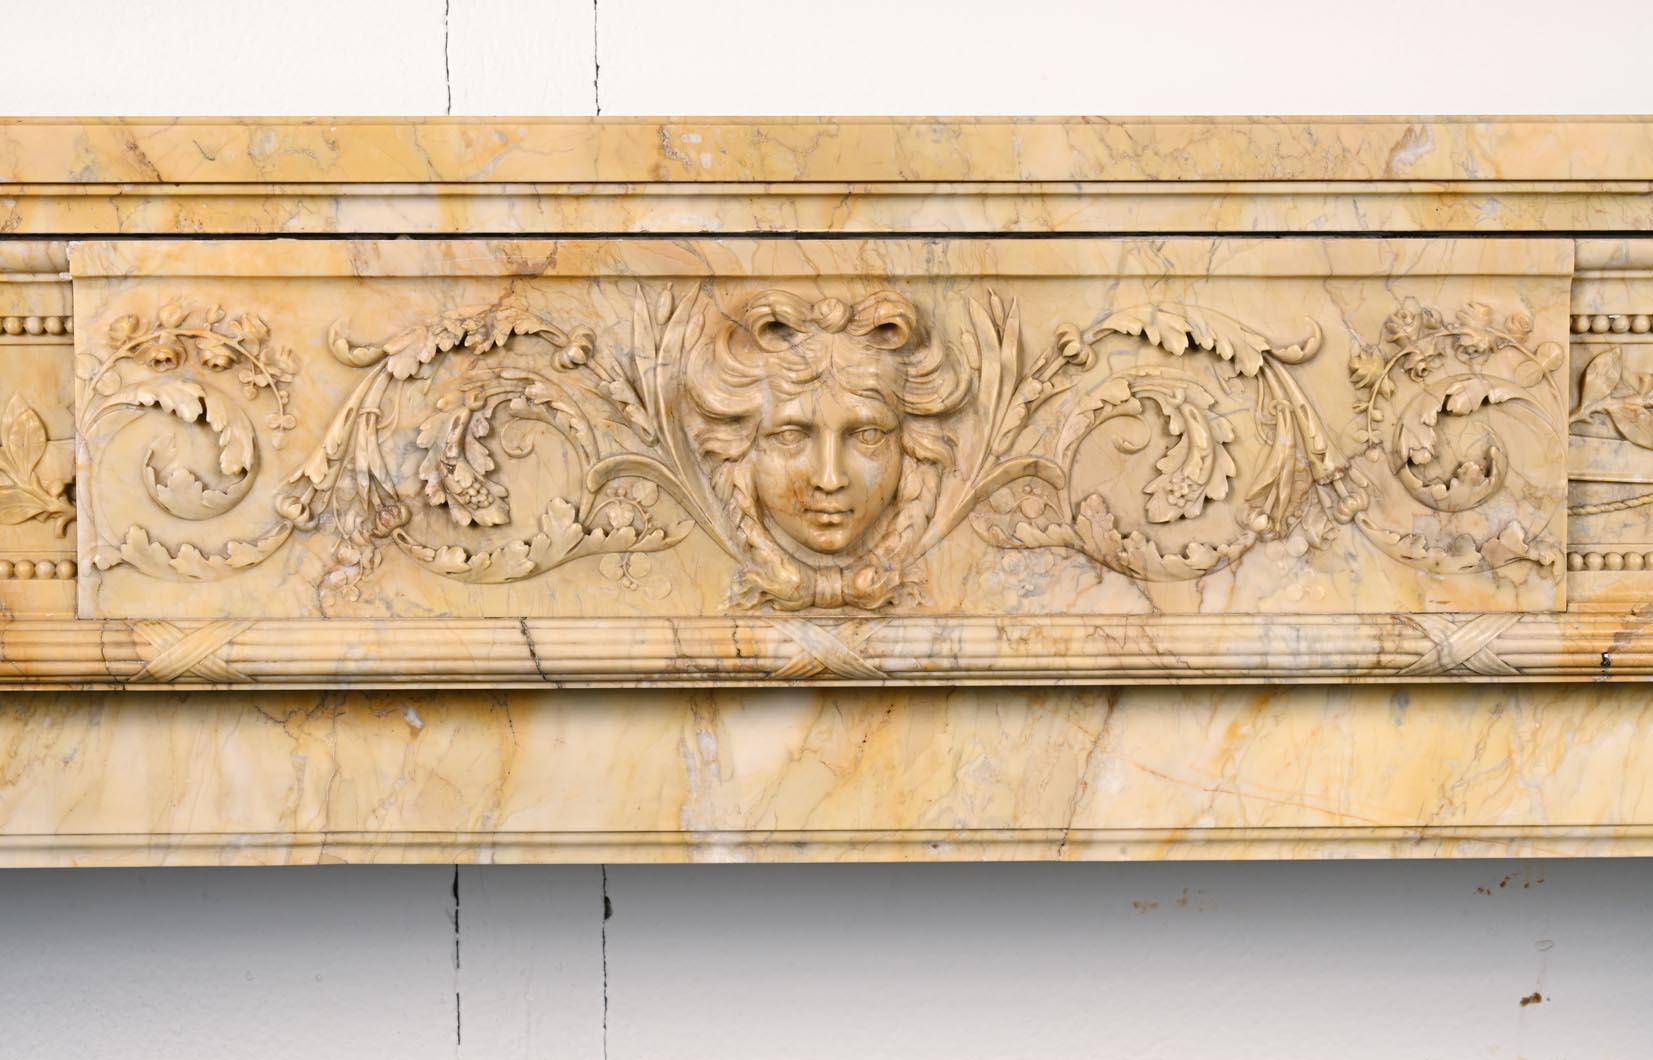 Dieser große Kaminsims im Louis-XVI-Stil wurde im 19. Jahrhundert aus gelbem Siena-Marmor geschnitzt. Den Türsturz ziert eine reiche und filigrane Flachreliefskulptur: In der Mitte ist ein Kopf des Apollo mit geflochtenem Haar zu sehen, der von